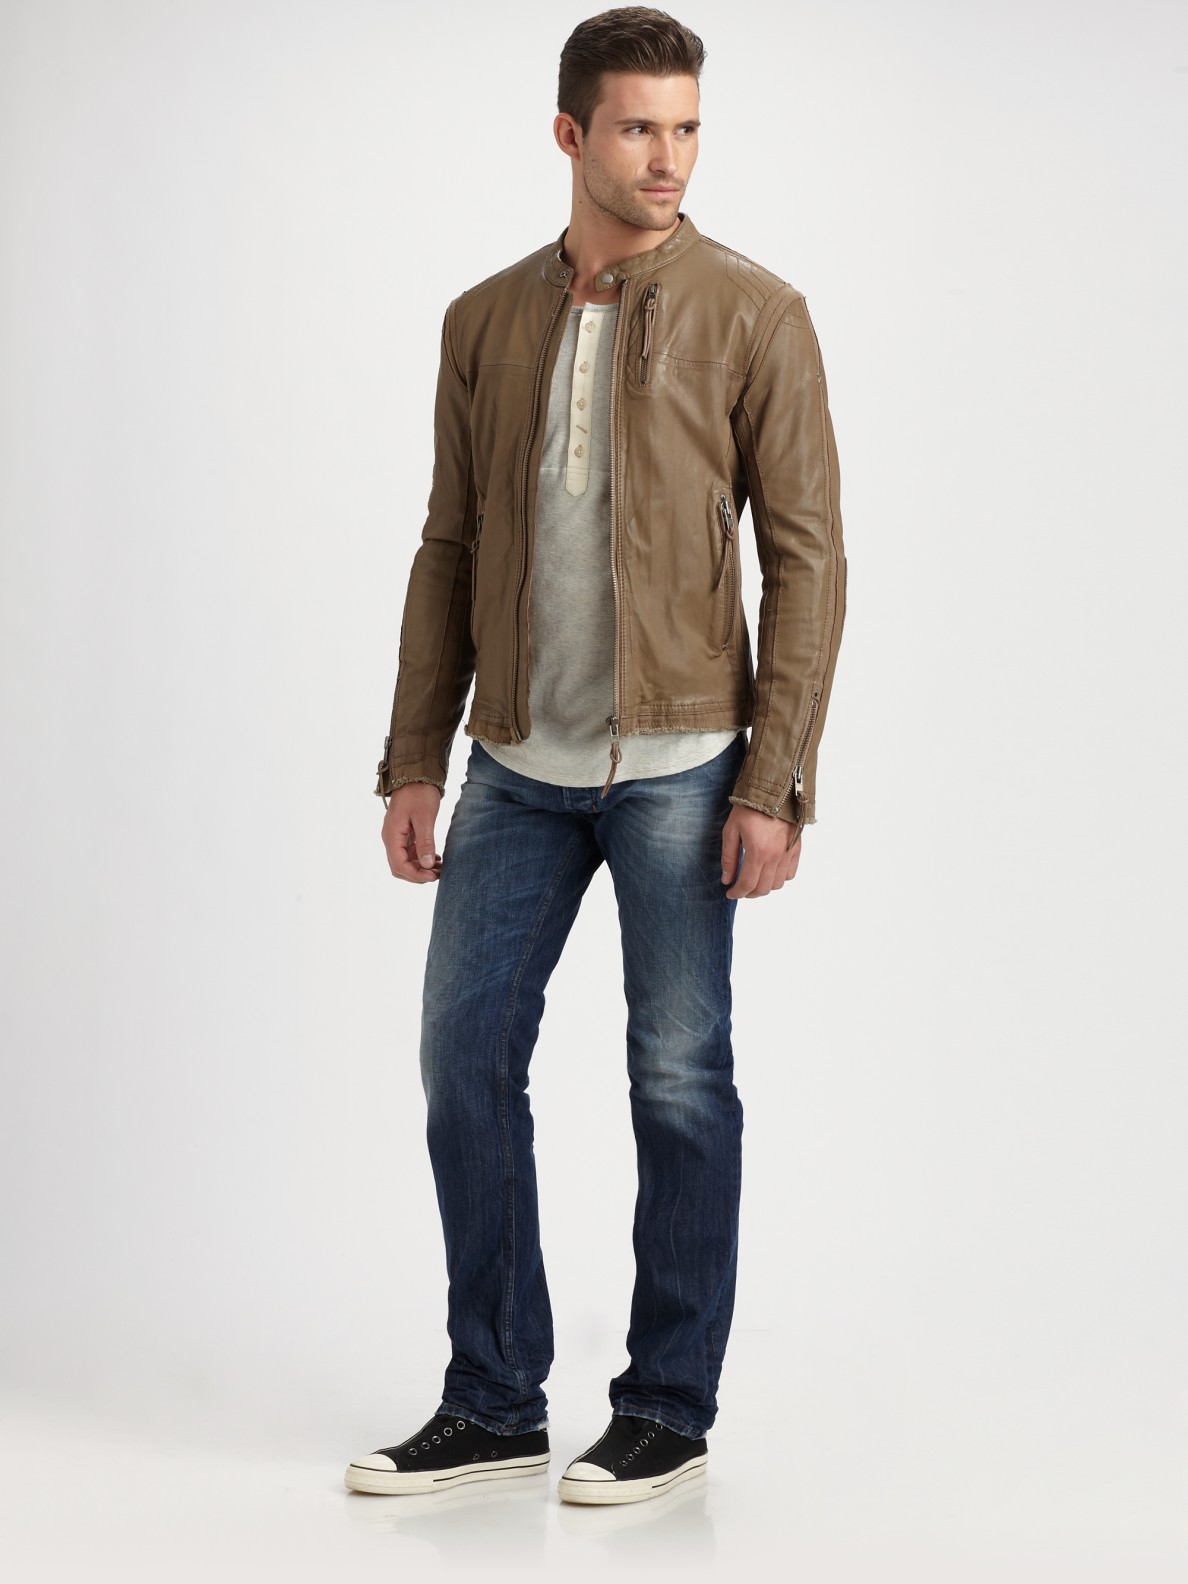 Lyst - Diesel Lambskin Leather Jacket in Brown for Men